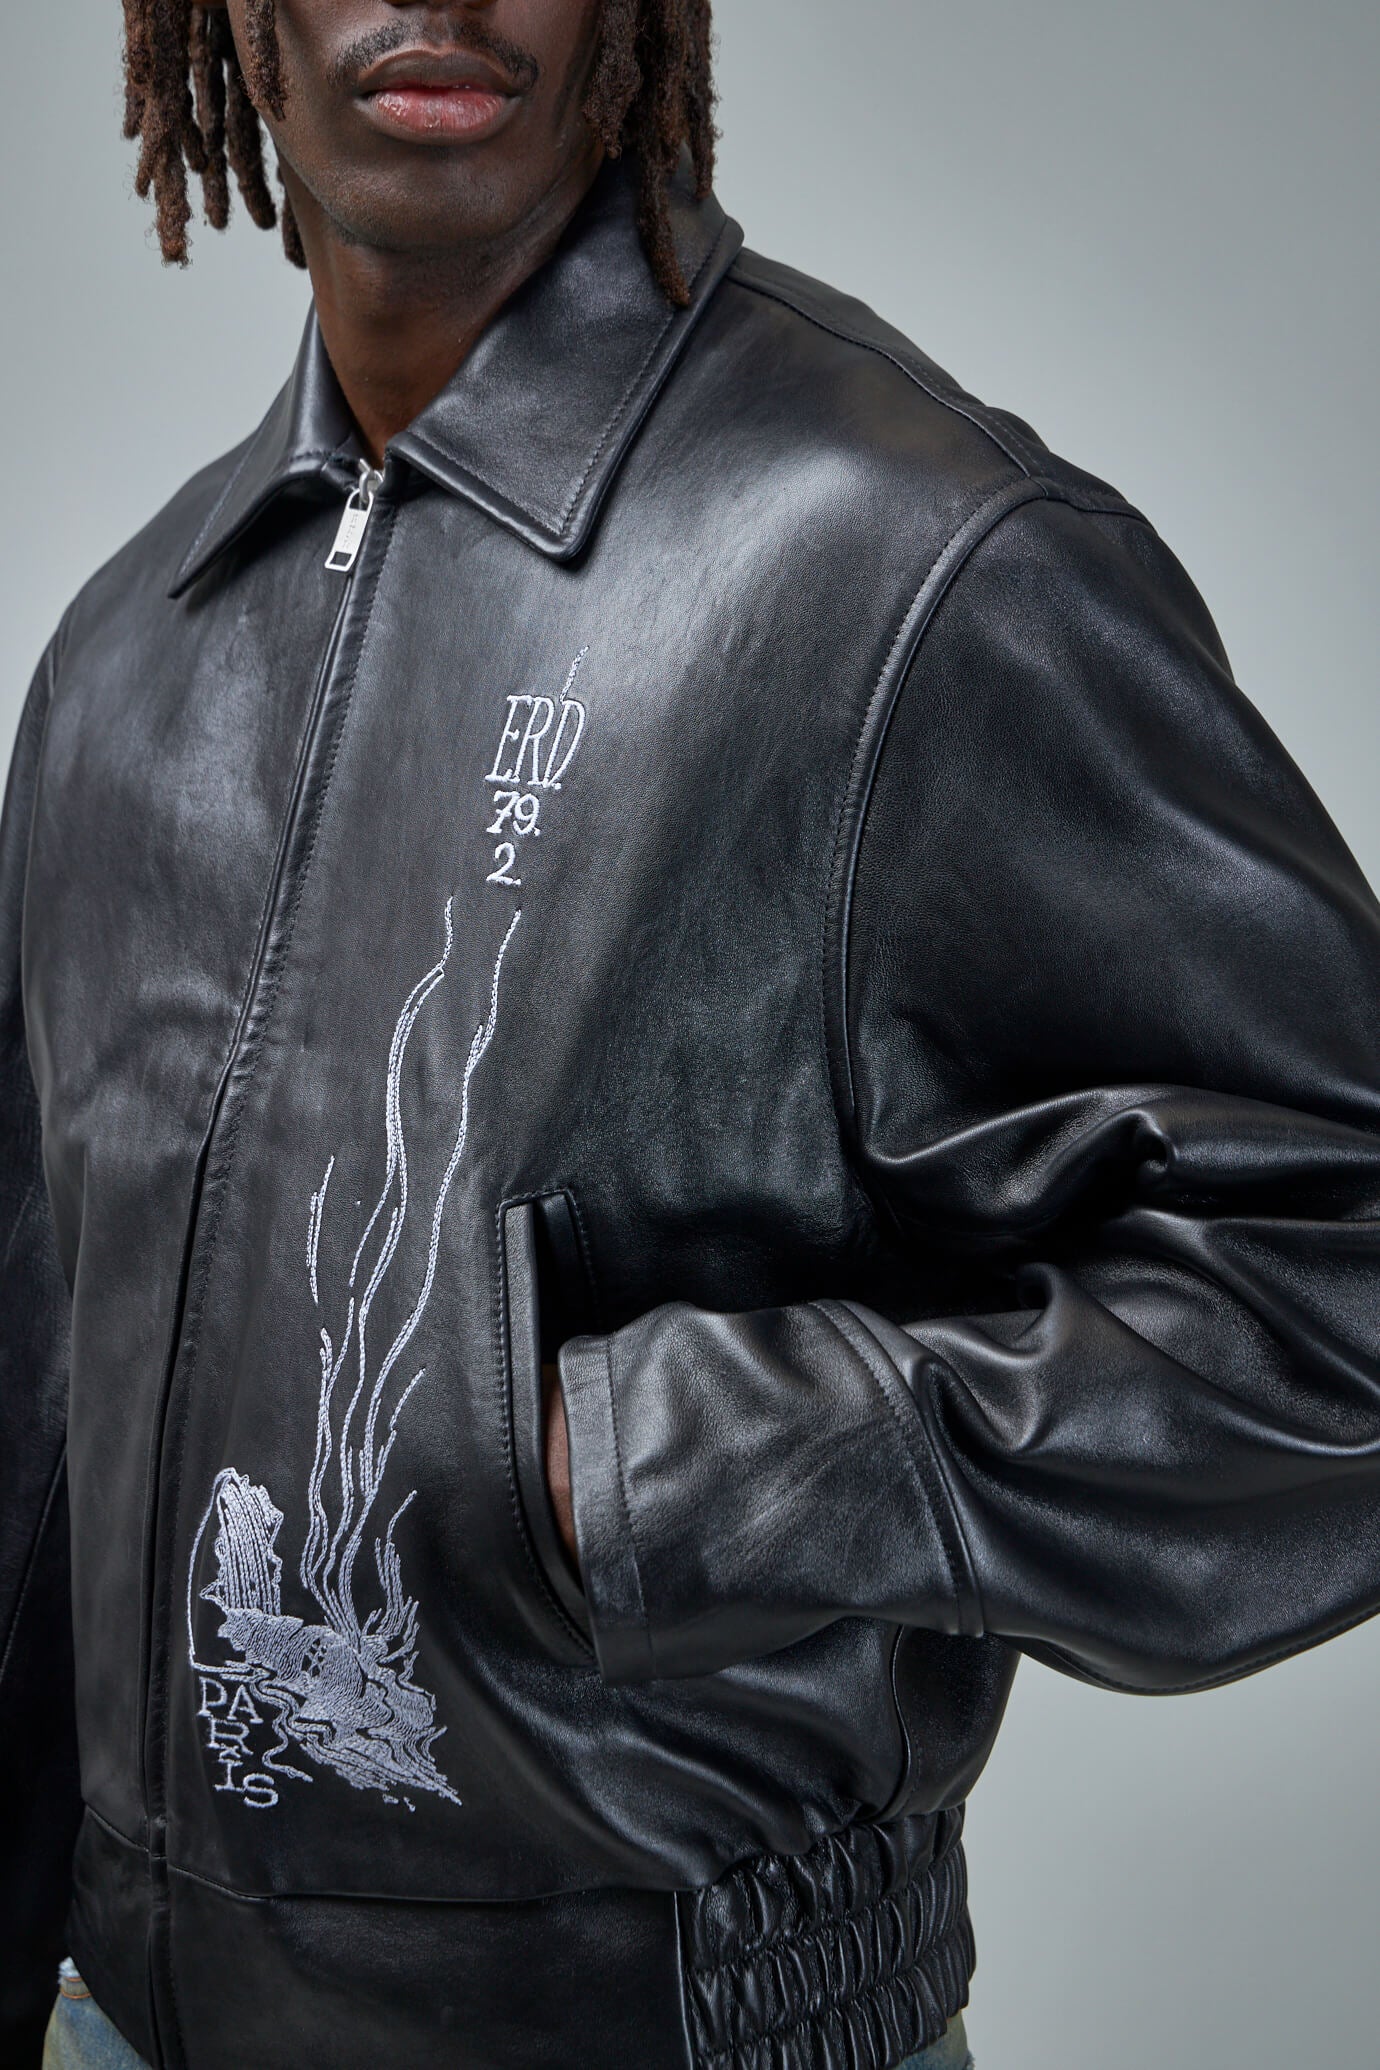 ERD Arcane 17 Zip Up Leather Jacket